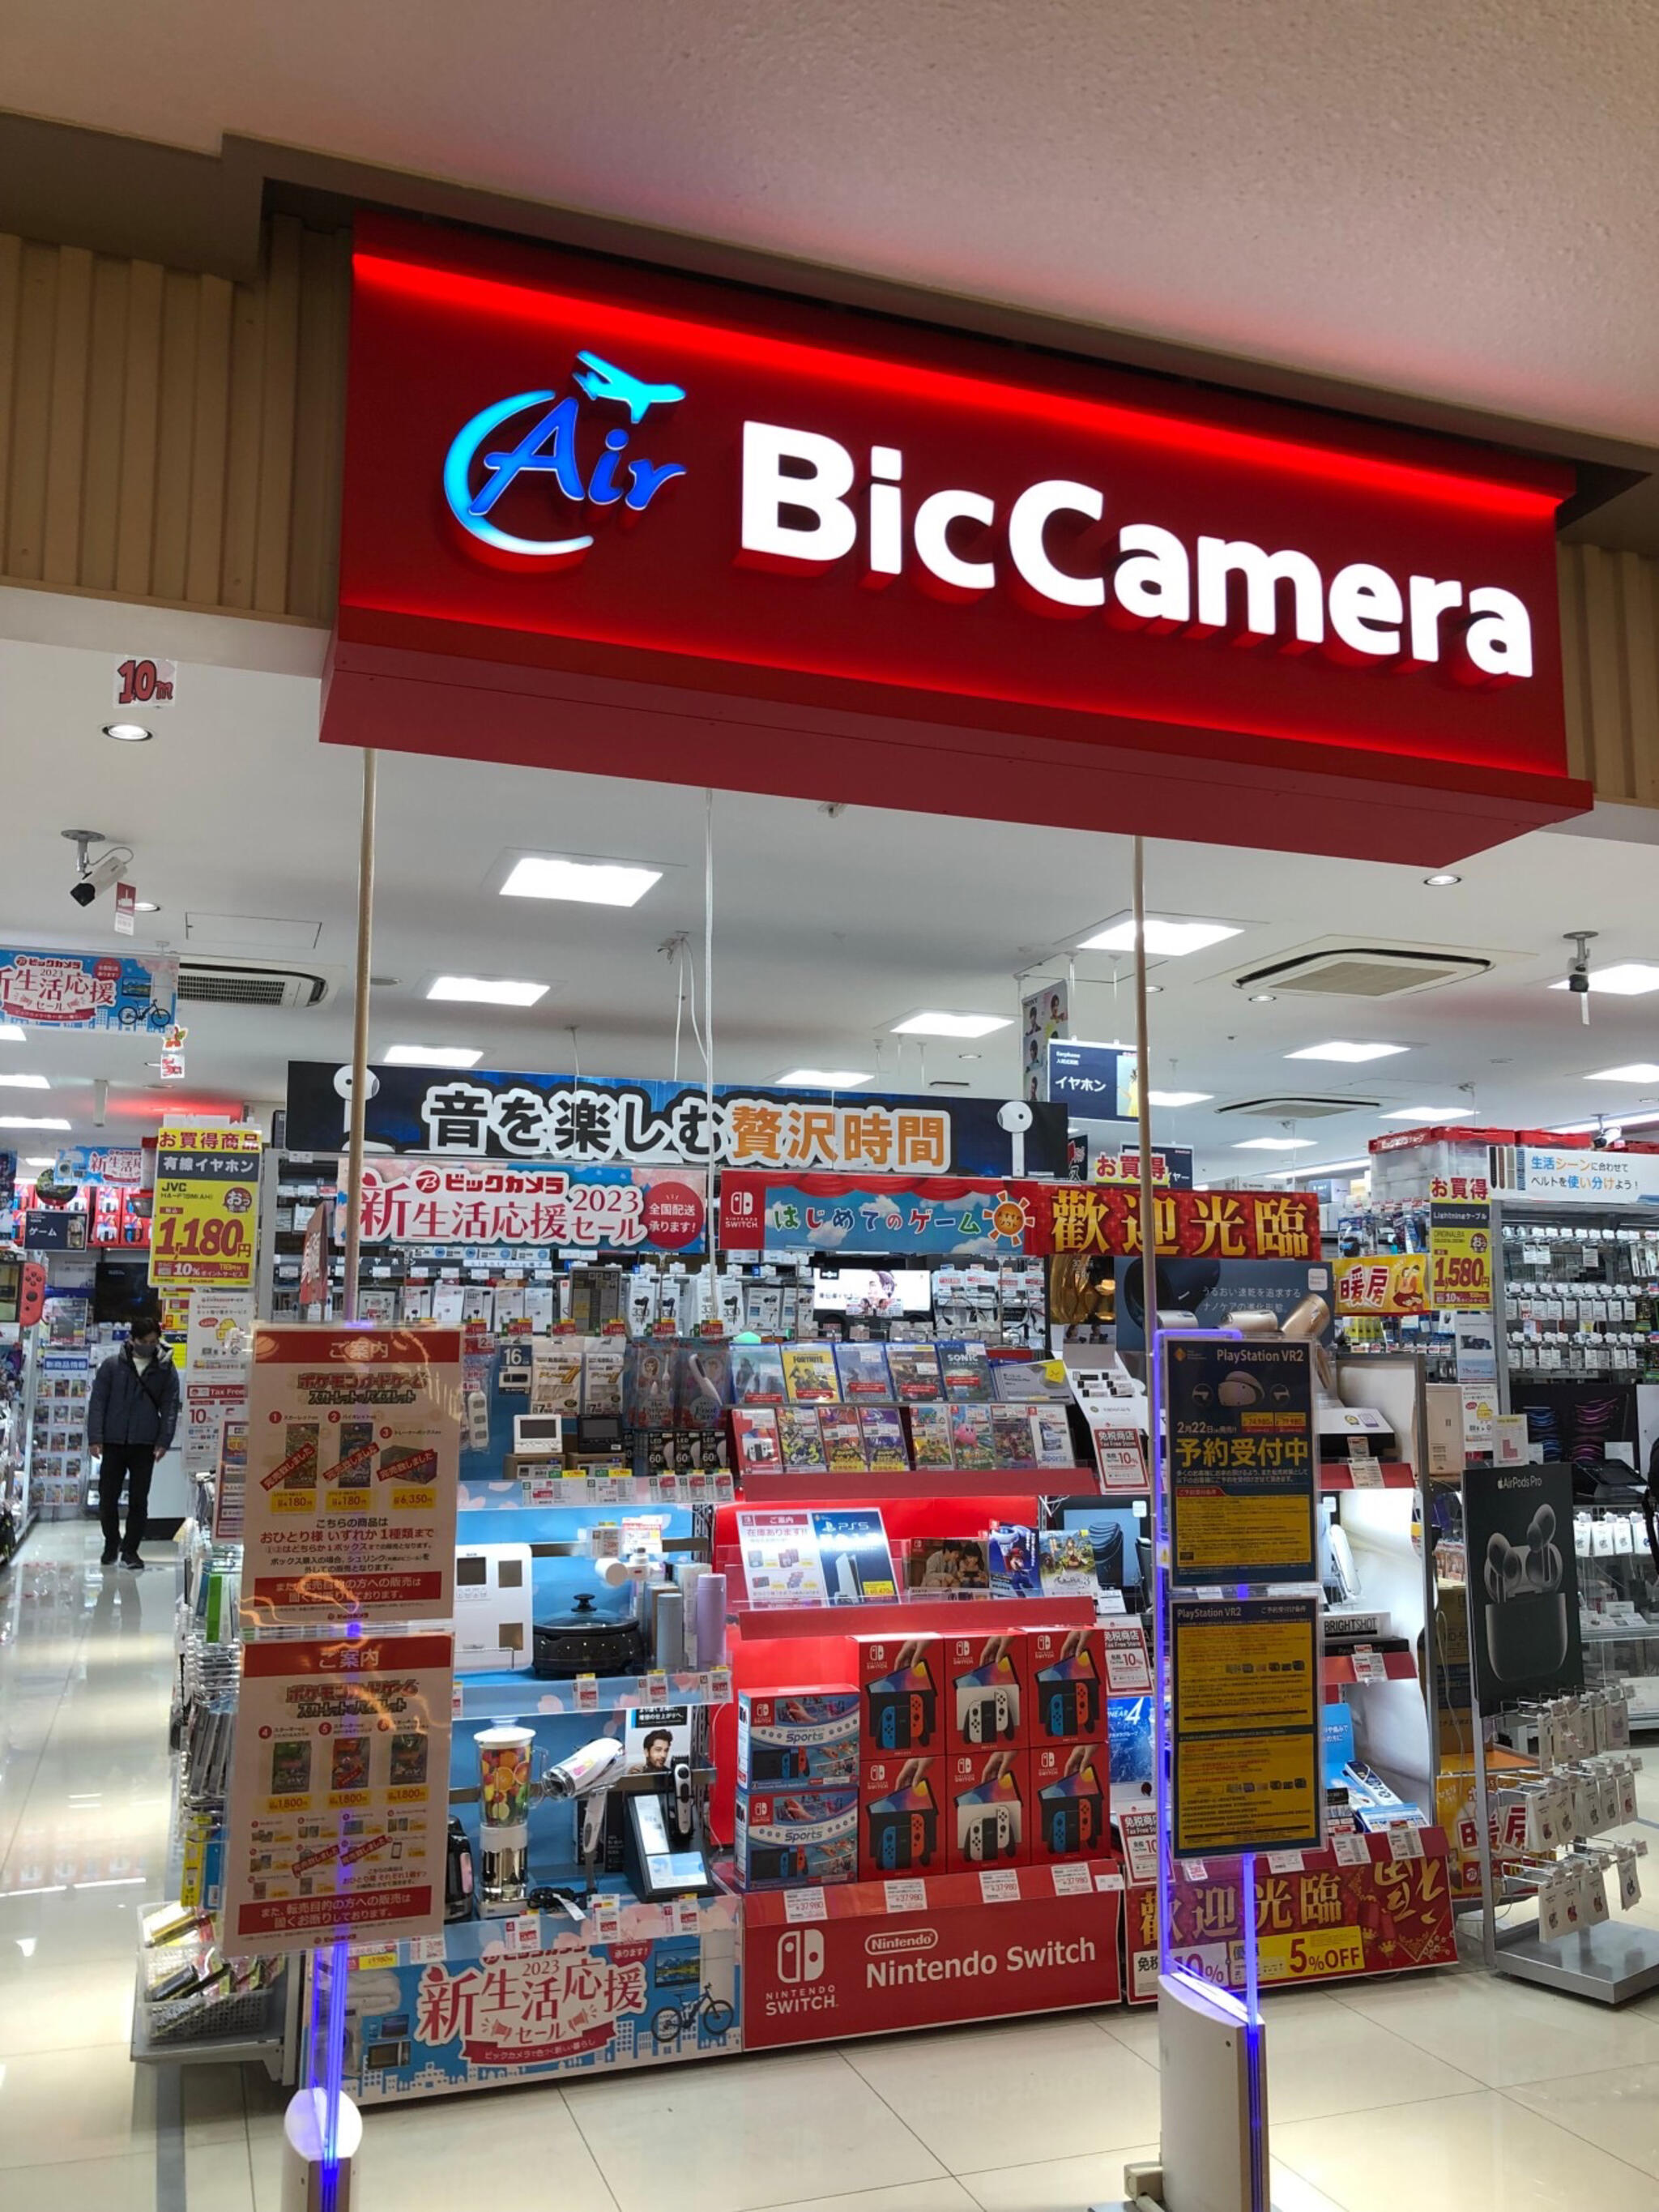 ビックカメラ Air BicCamera 東京スカイツリータウン・ソラマチ店の代表写真9